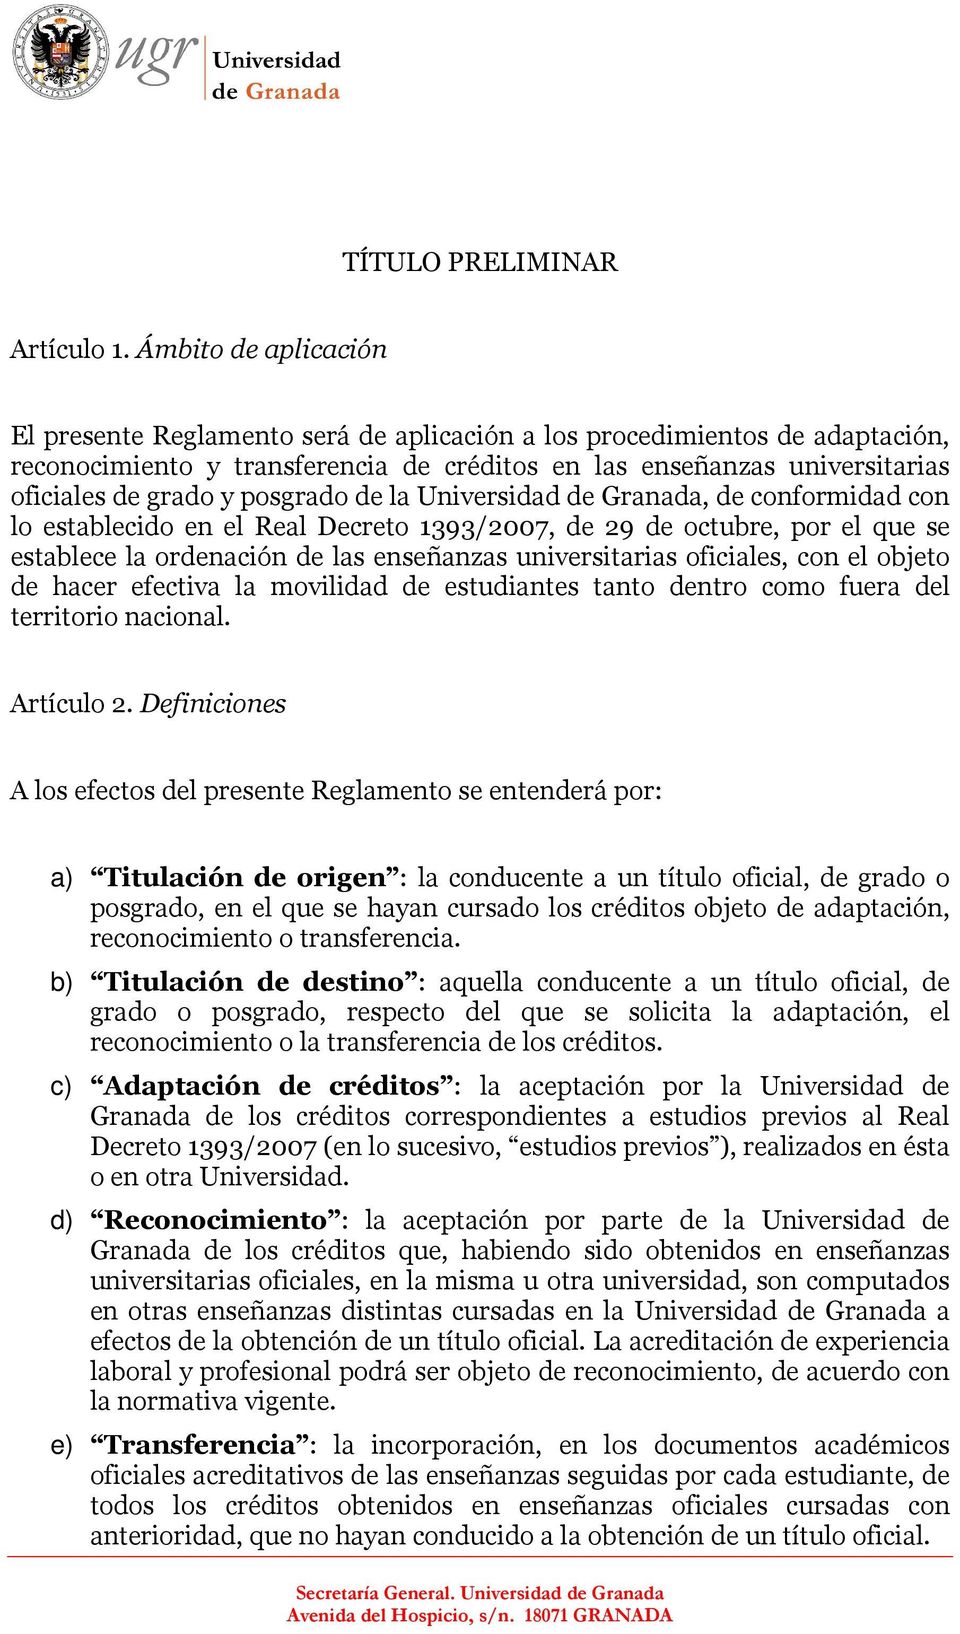 posgrado de la Universidad de Granada, de conformidad con lo establecido en el Real Decreto 1393/2007, de 29 de octubre, por el que se establece la ordenación de las enseñanzas universitarias